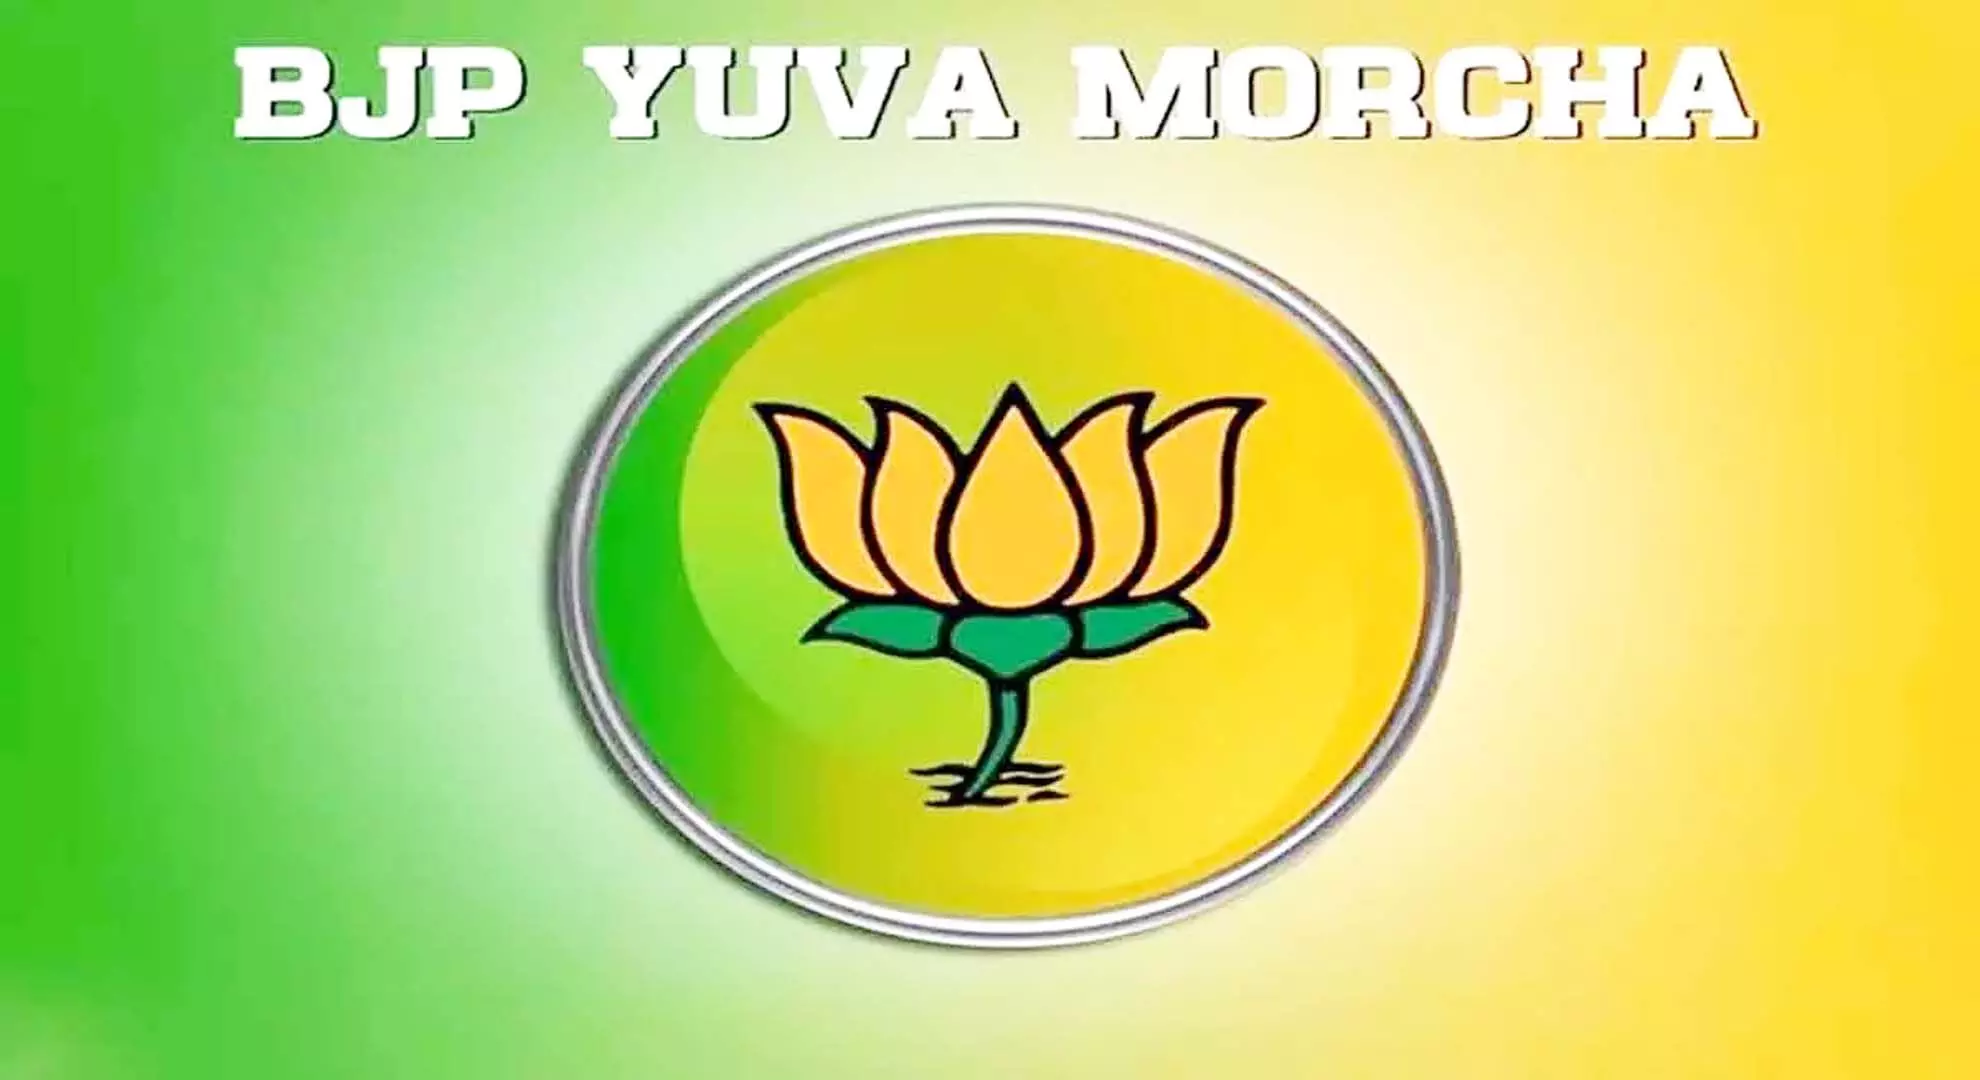 चुनाव में भाजपा की भारी जीत सुनिश्चित करने के लिए नई भाजयुमो टीम नियुक्त